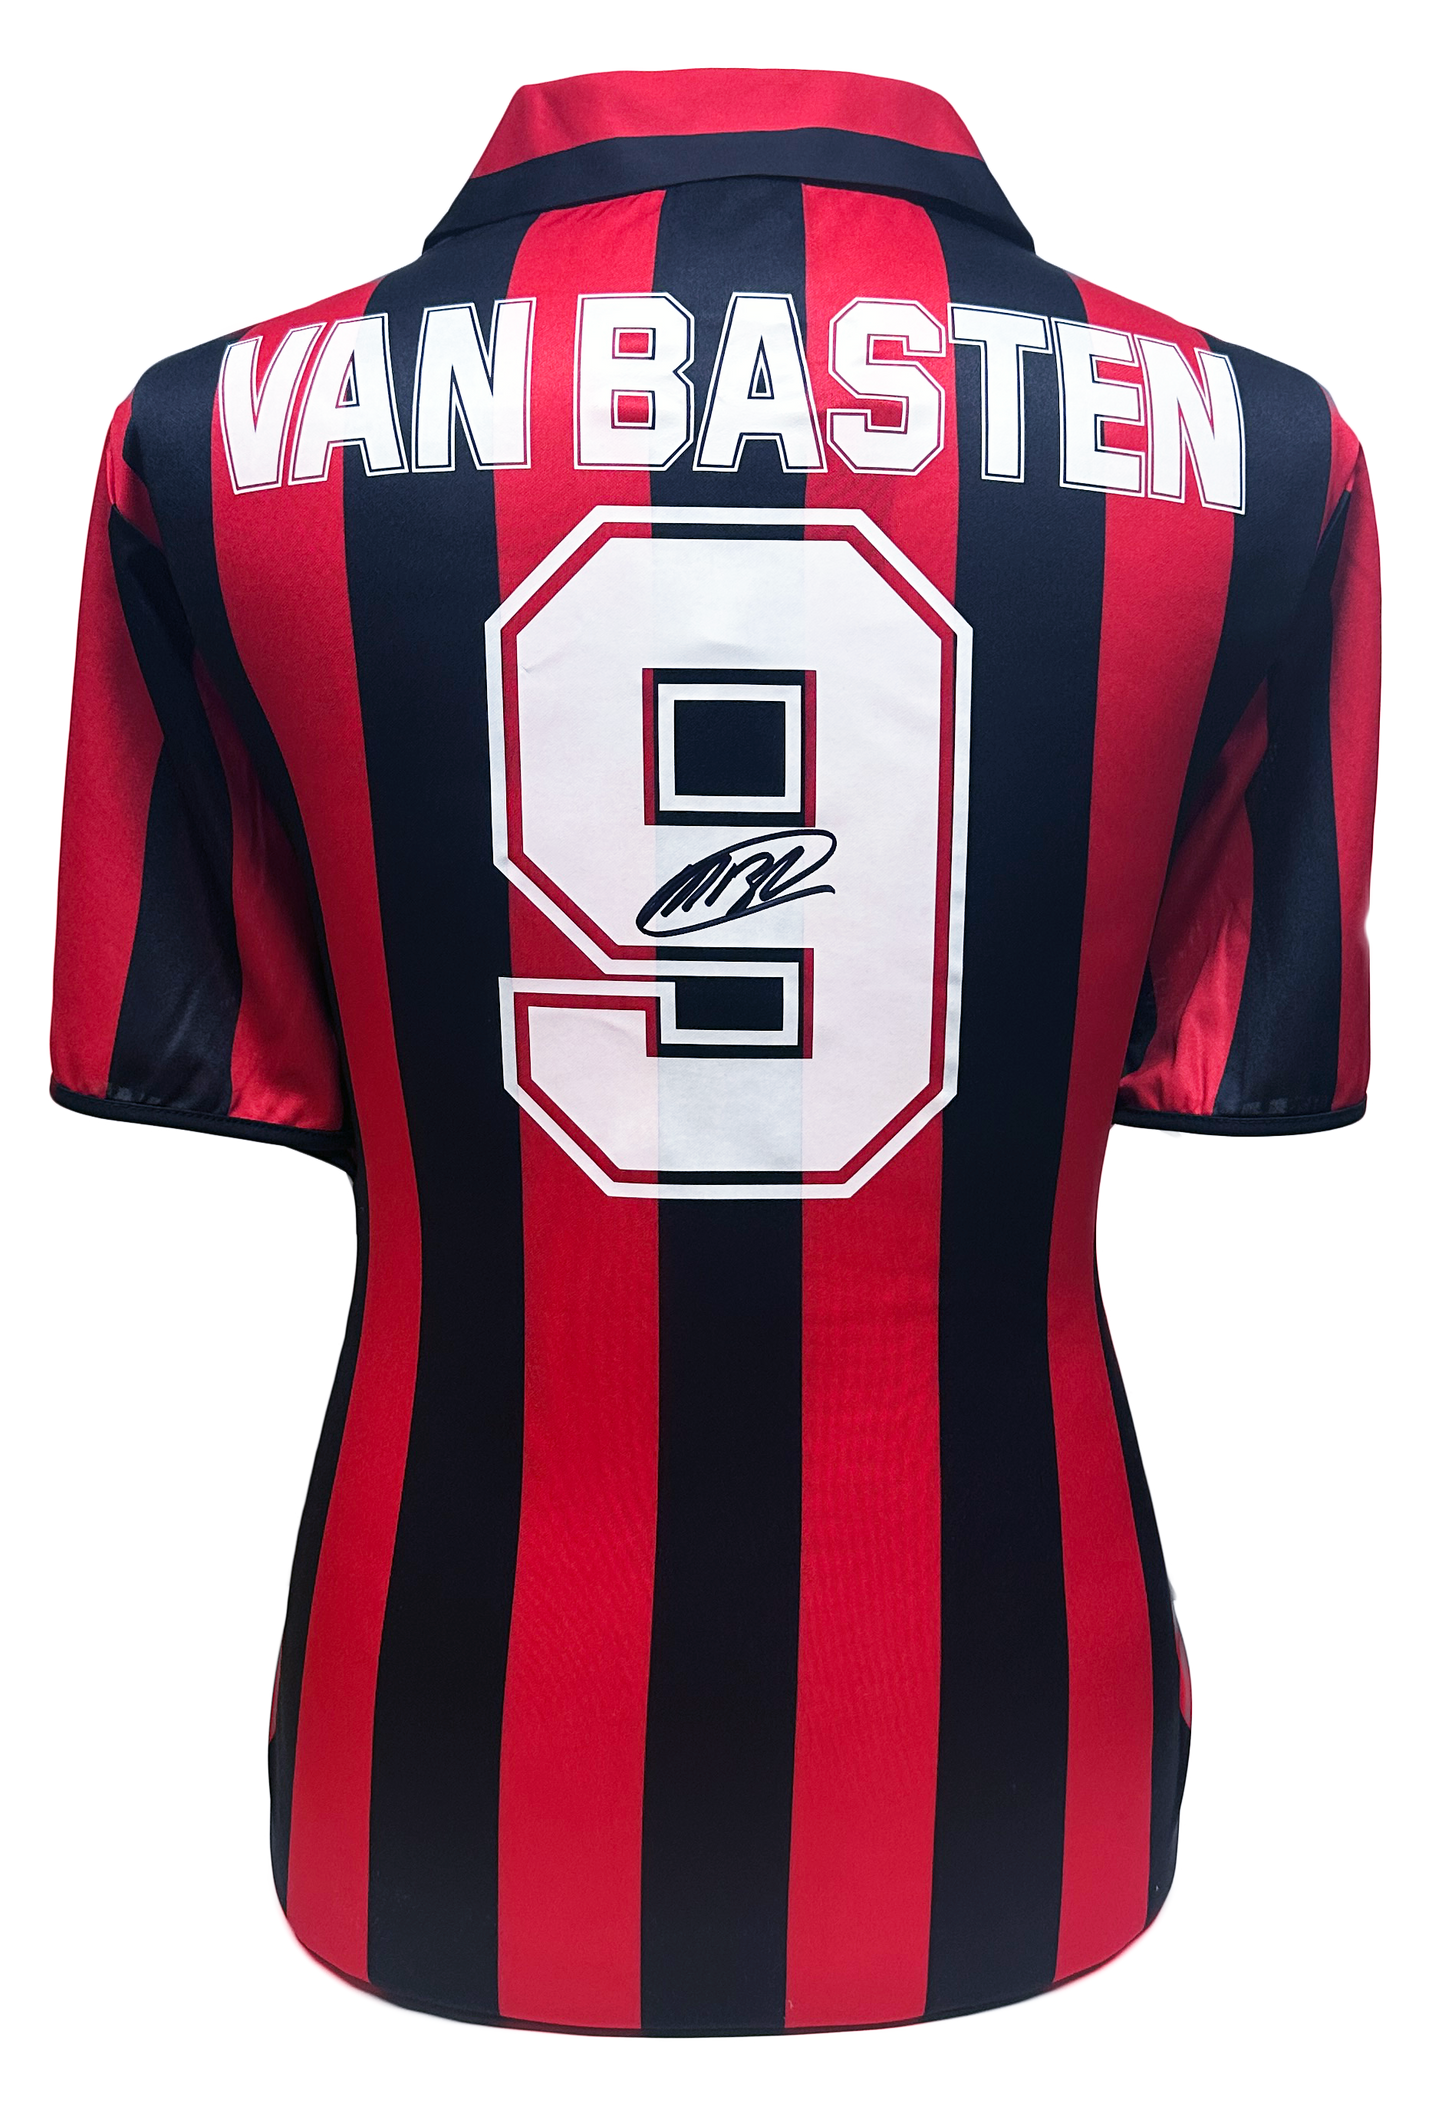 Marco Van Basten AC Milan Signed Shirt